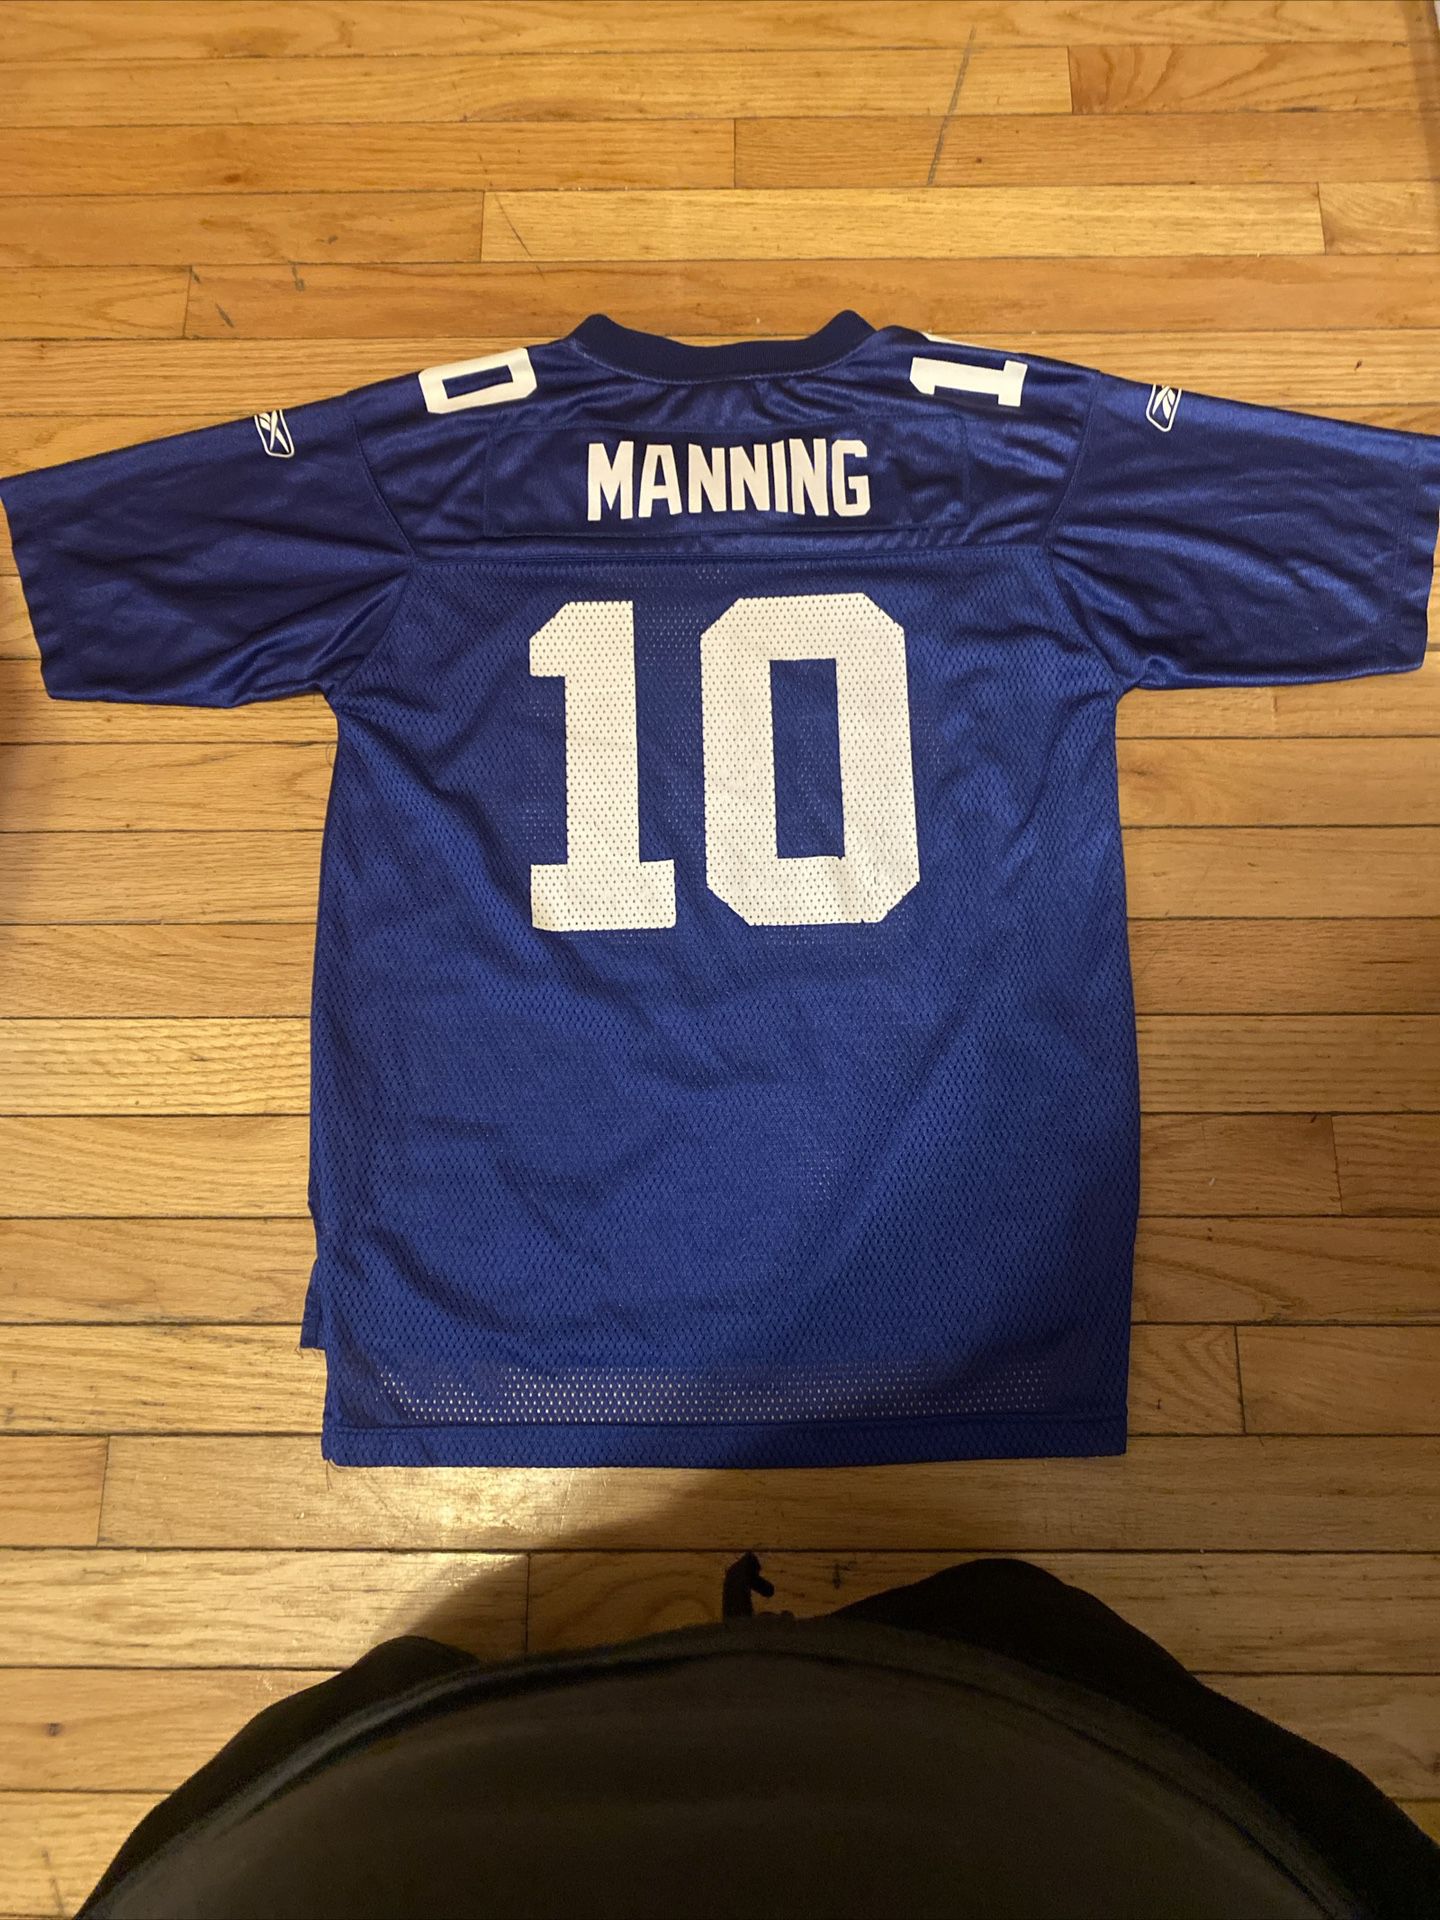 Eli Manning NFL Jersey 